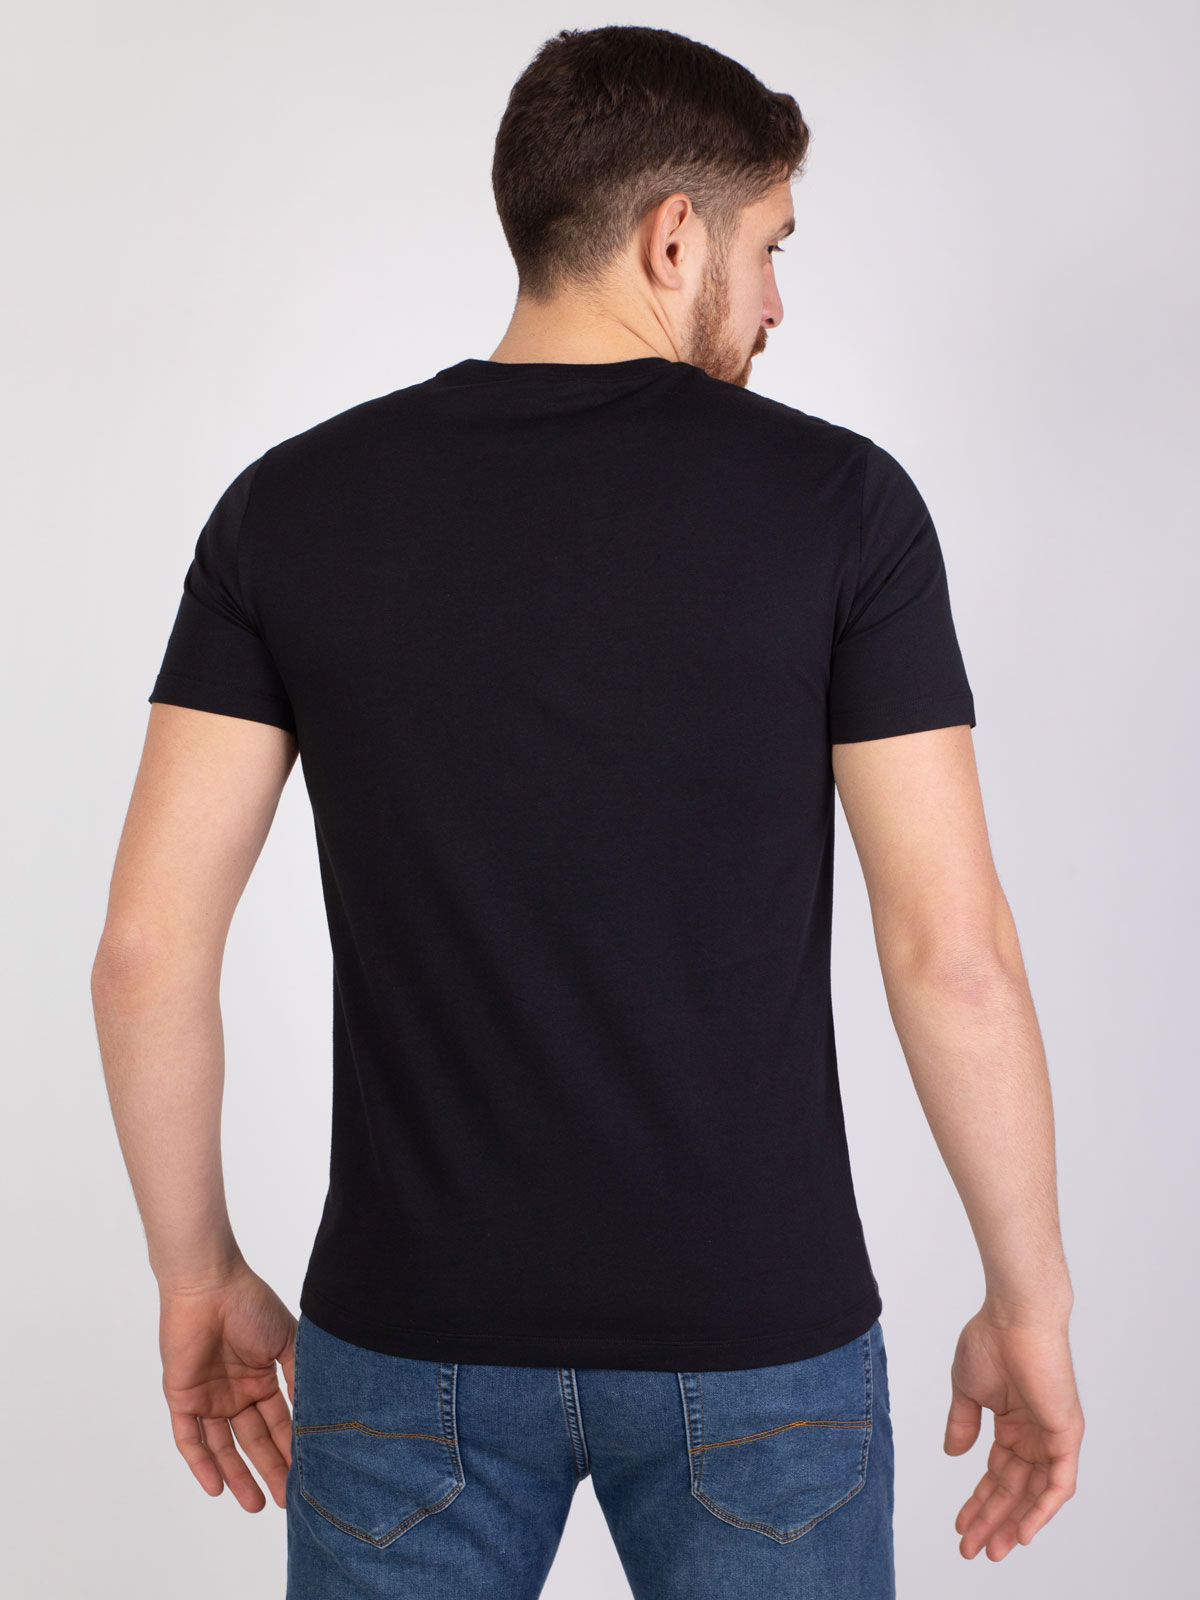 Μαύρο ριγέ μπλουζάκι μπροστά σε μπορντό - 96393 € 27.00 img4